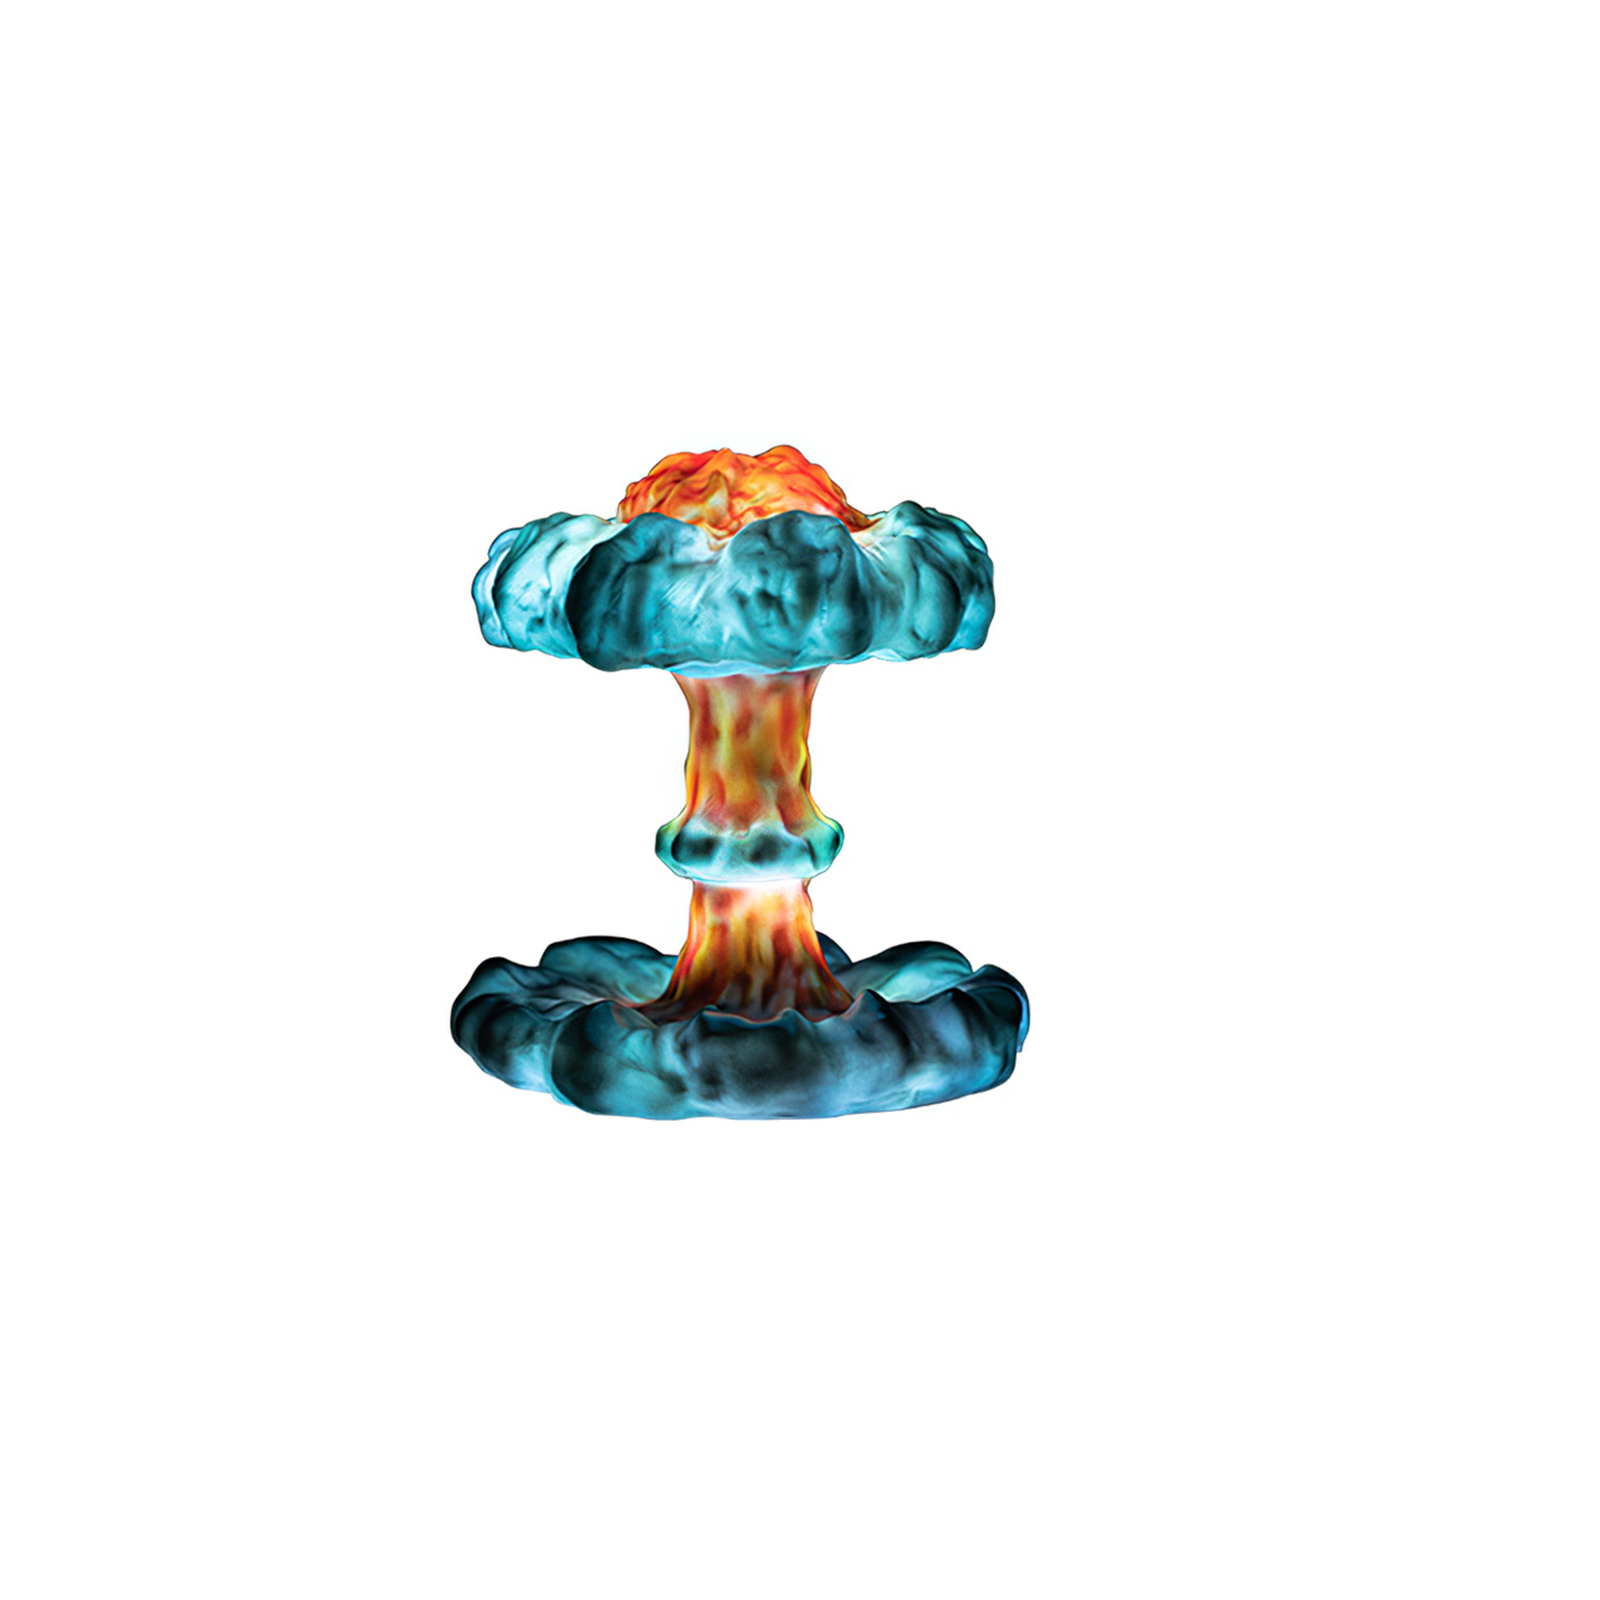 Nuclear Explosion Mushroom Cloud Model Lamp